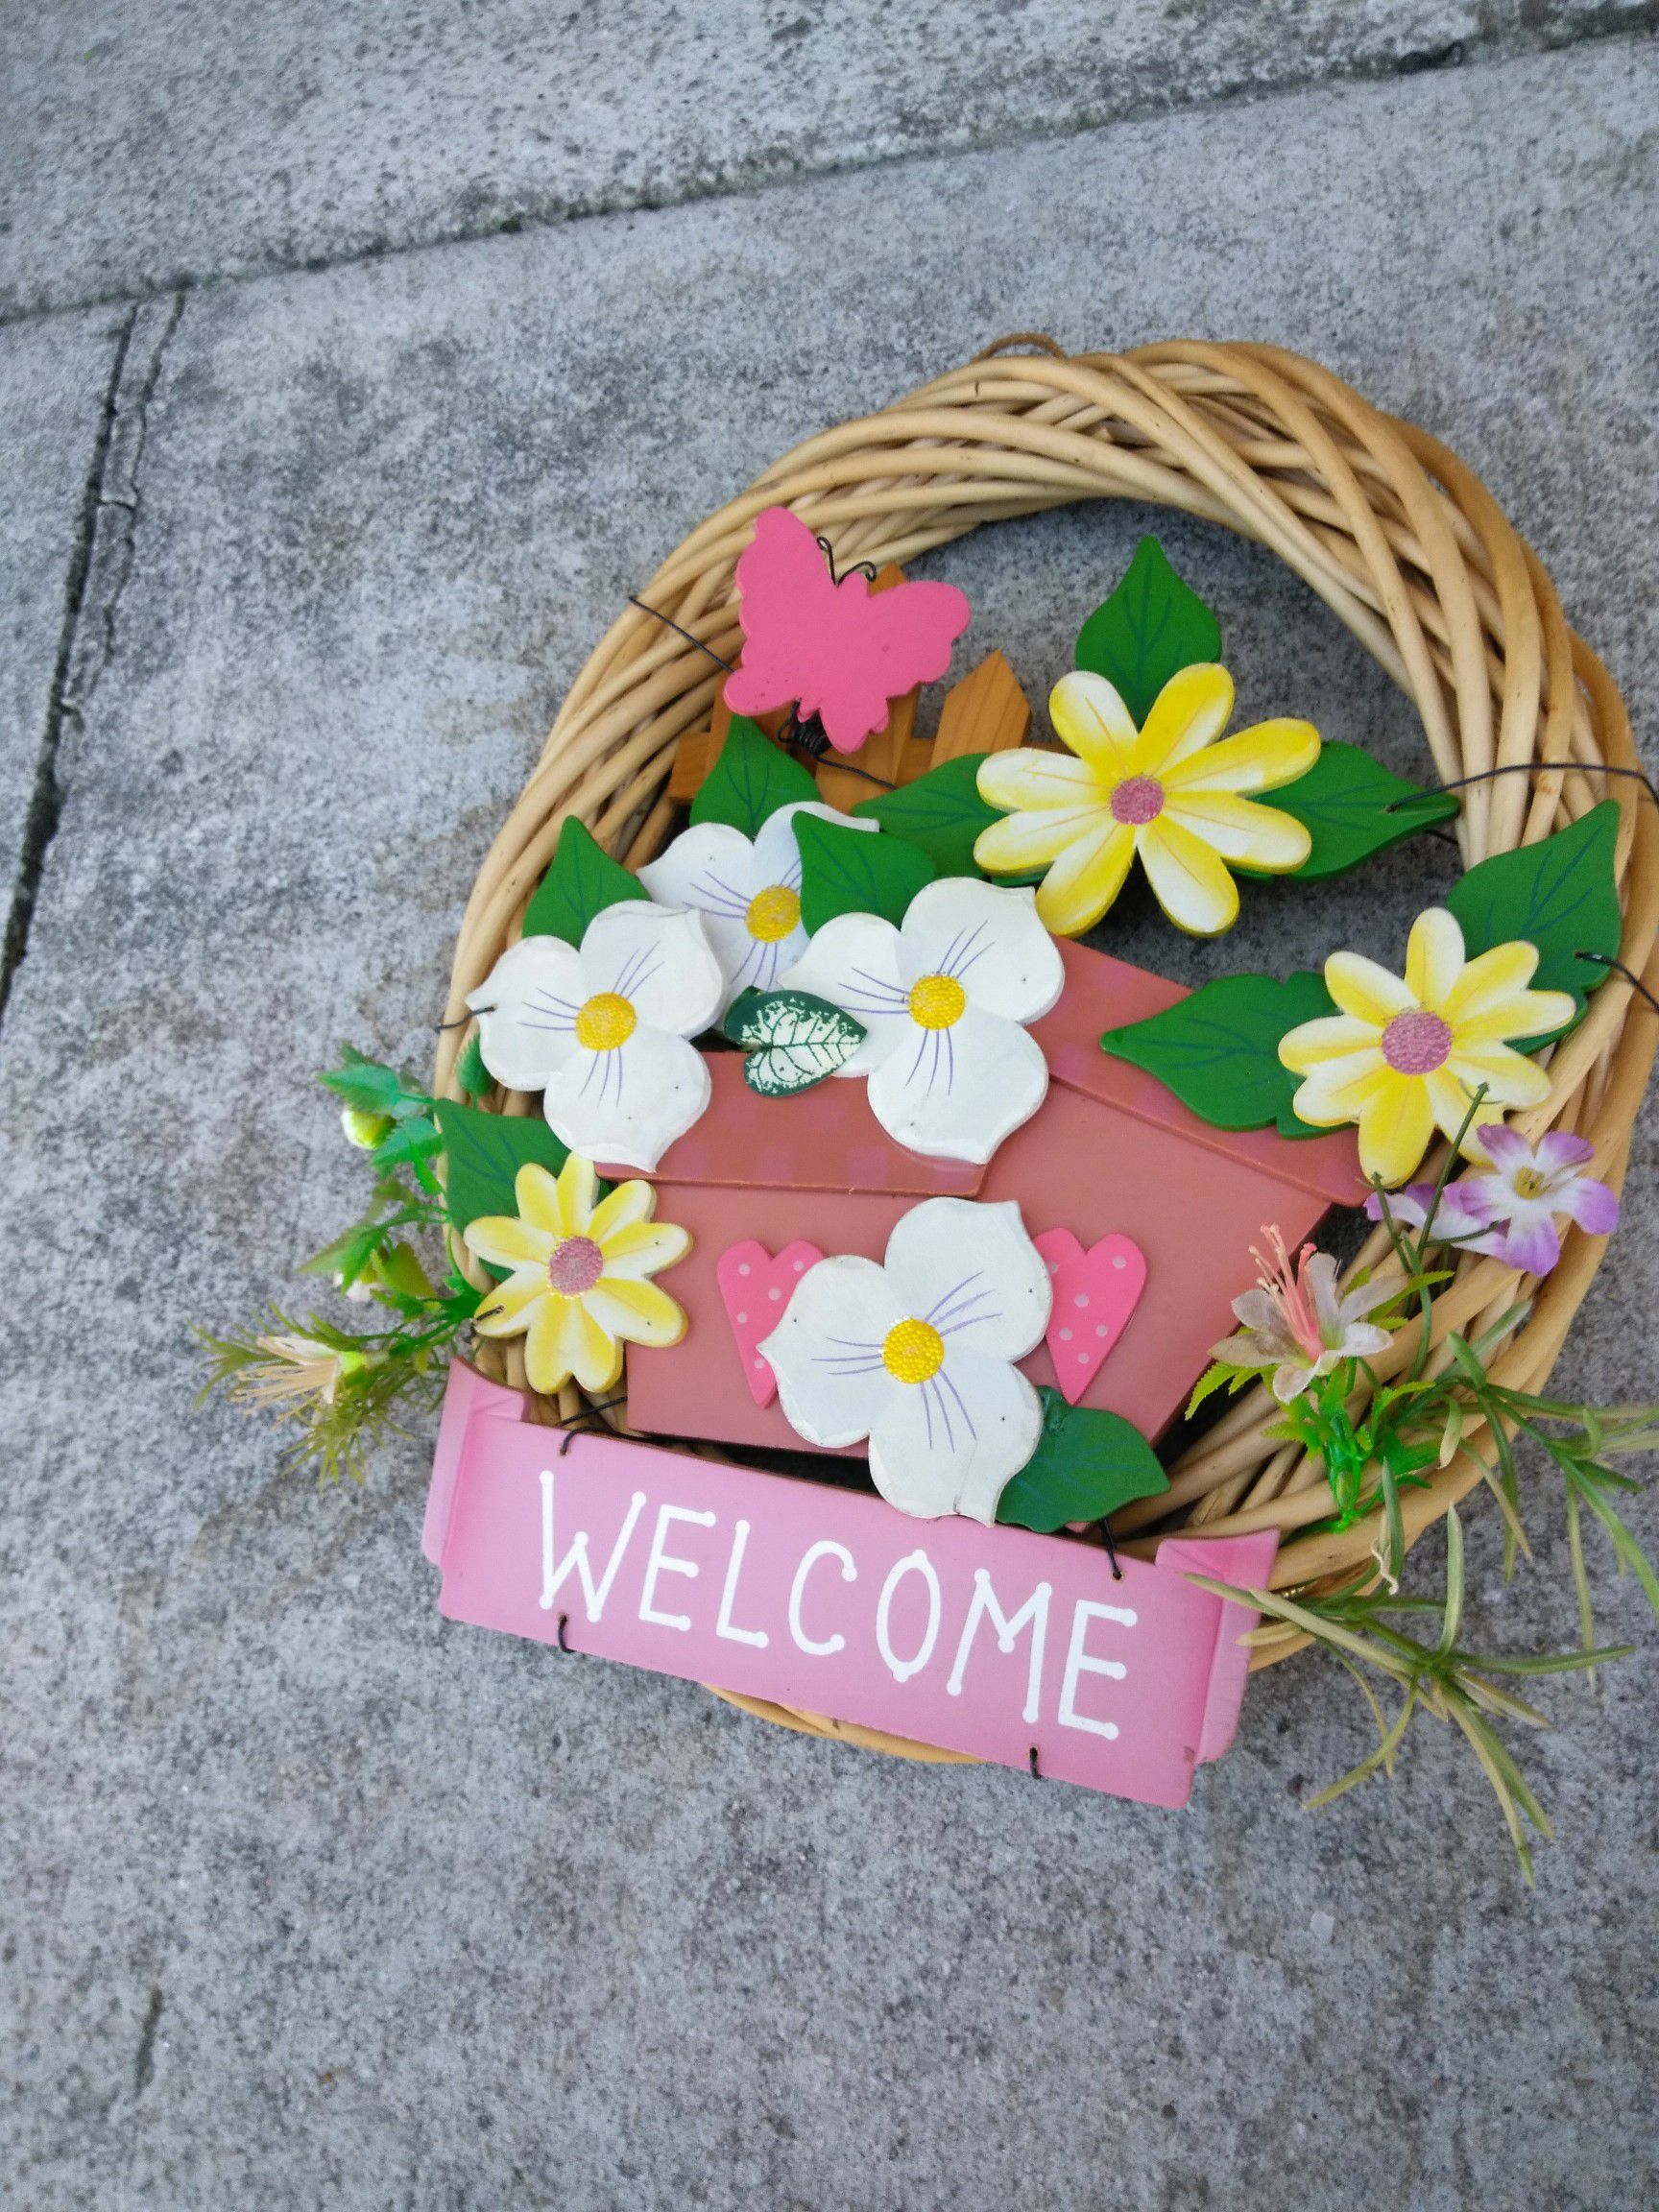 Welcome door flower basket